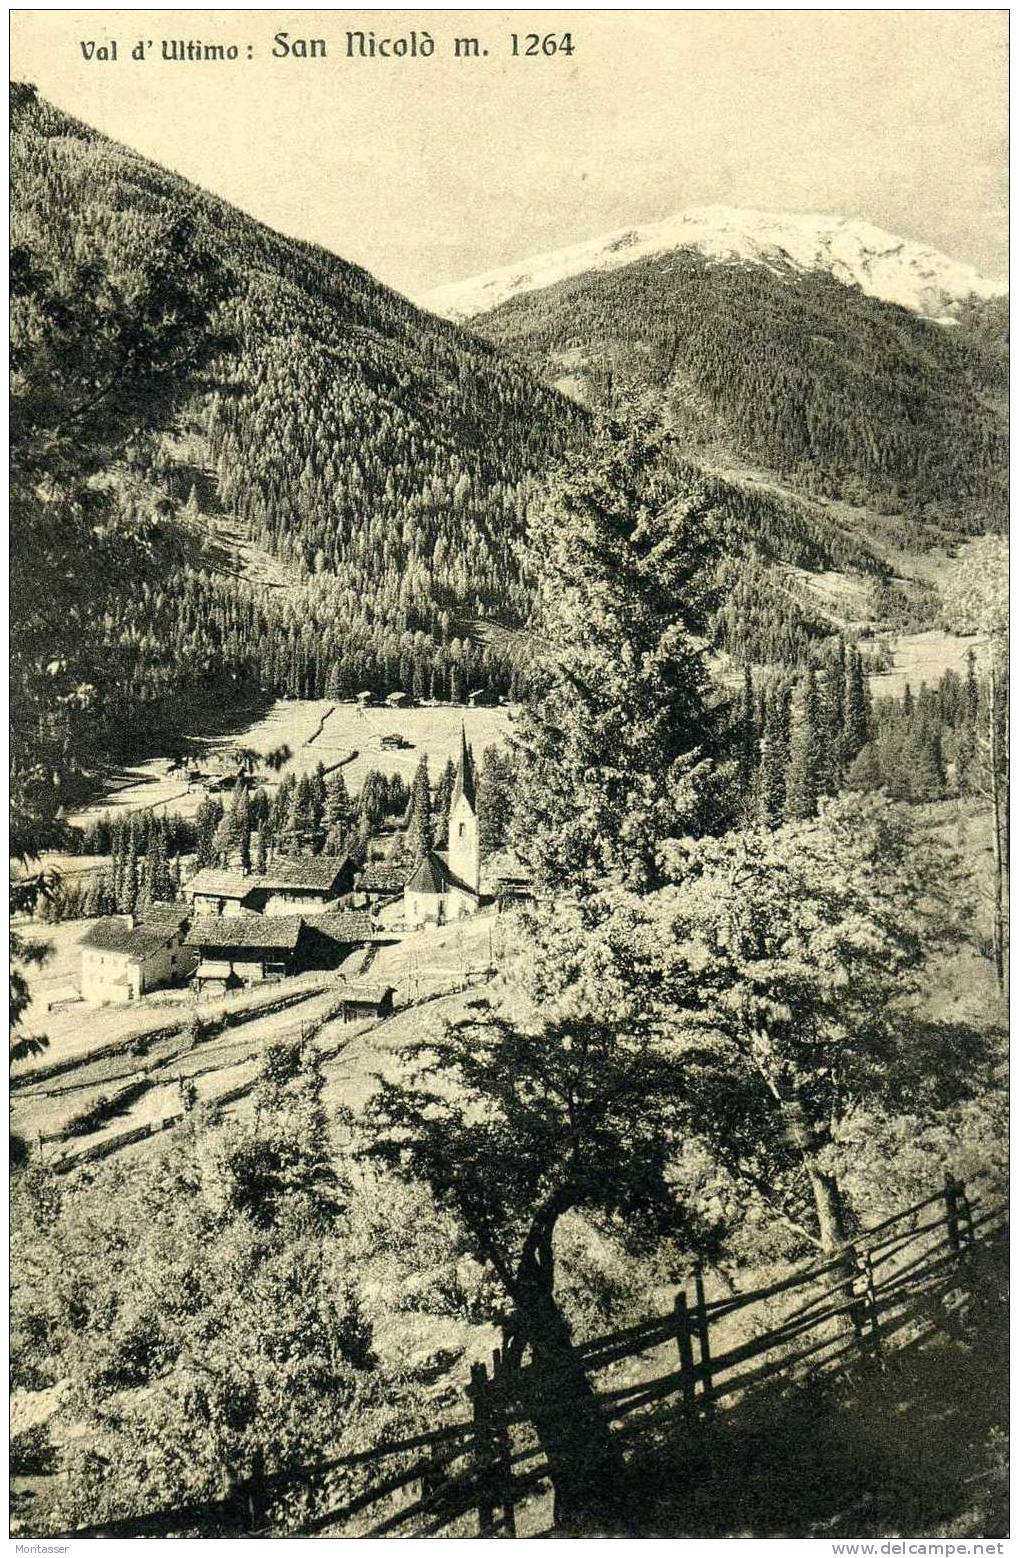 SAN NICOLO (Bolzano). Val D' Ultimo. Montagna. Non Vg. 1928. - Bolzano